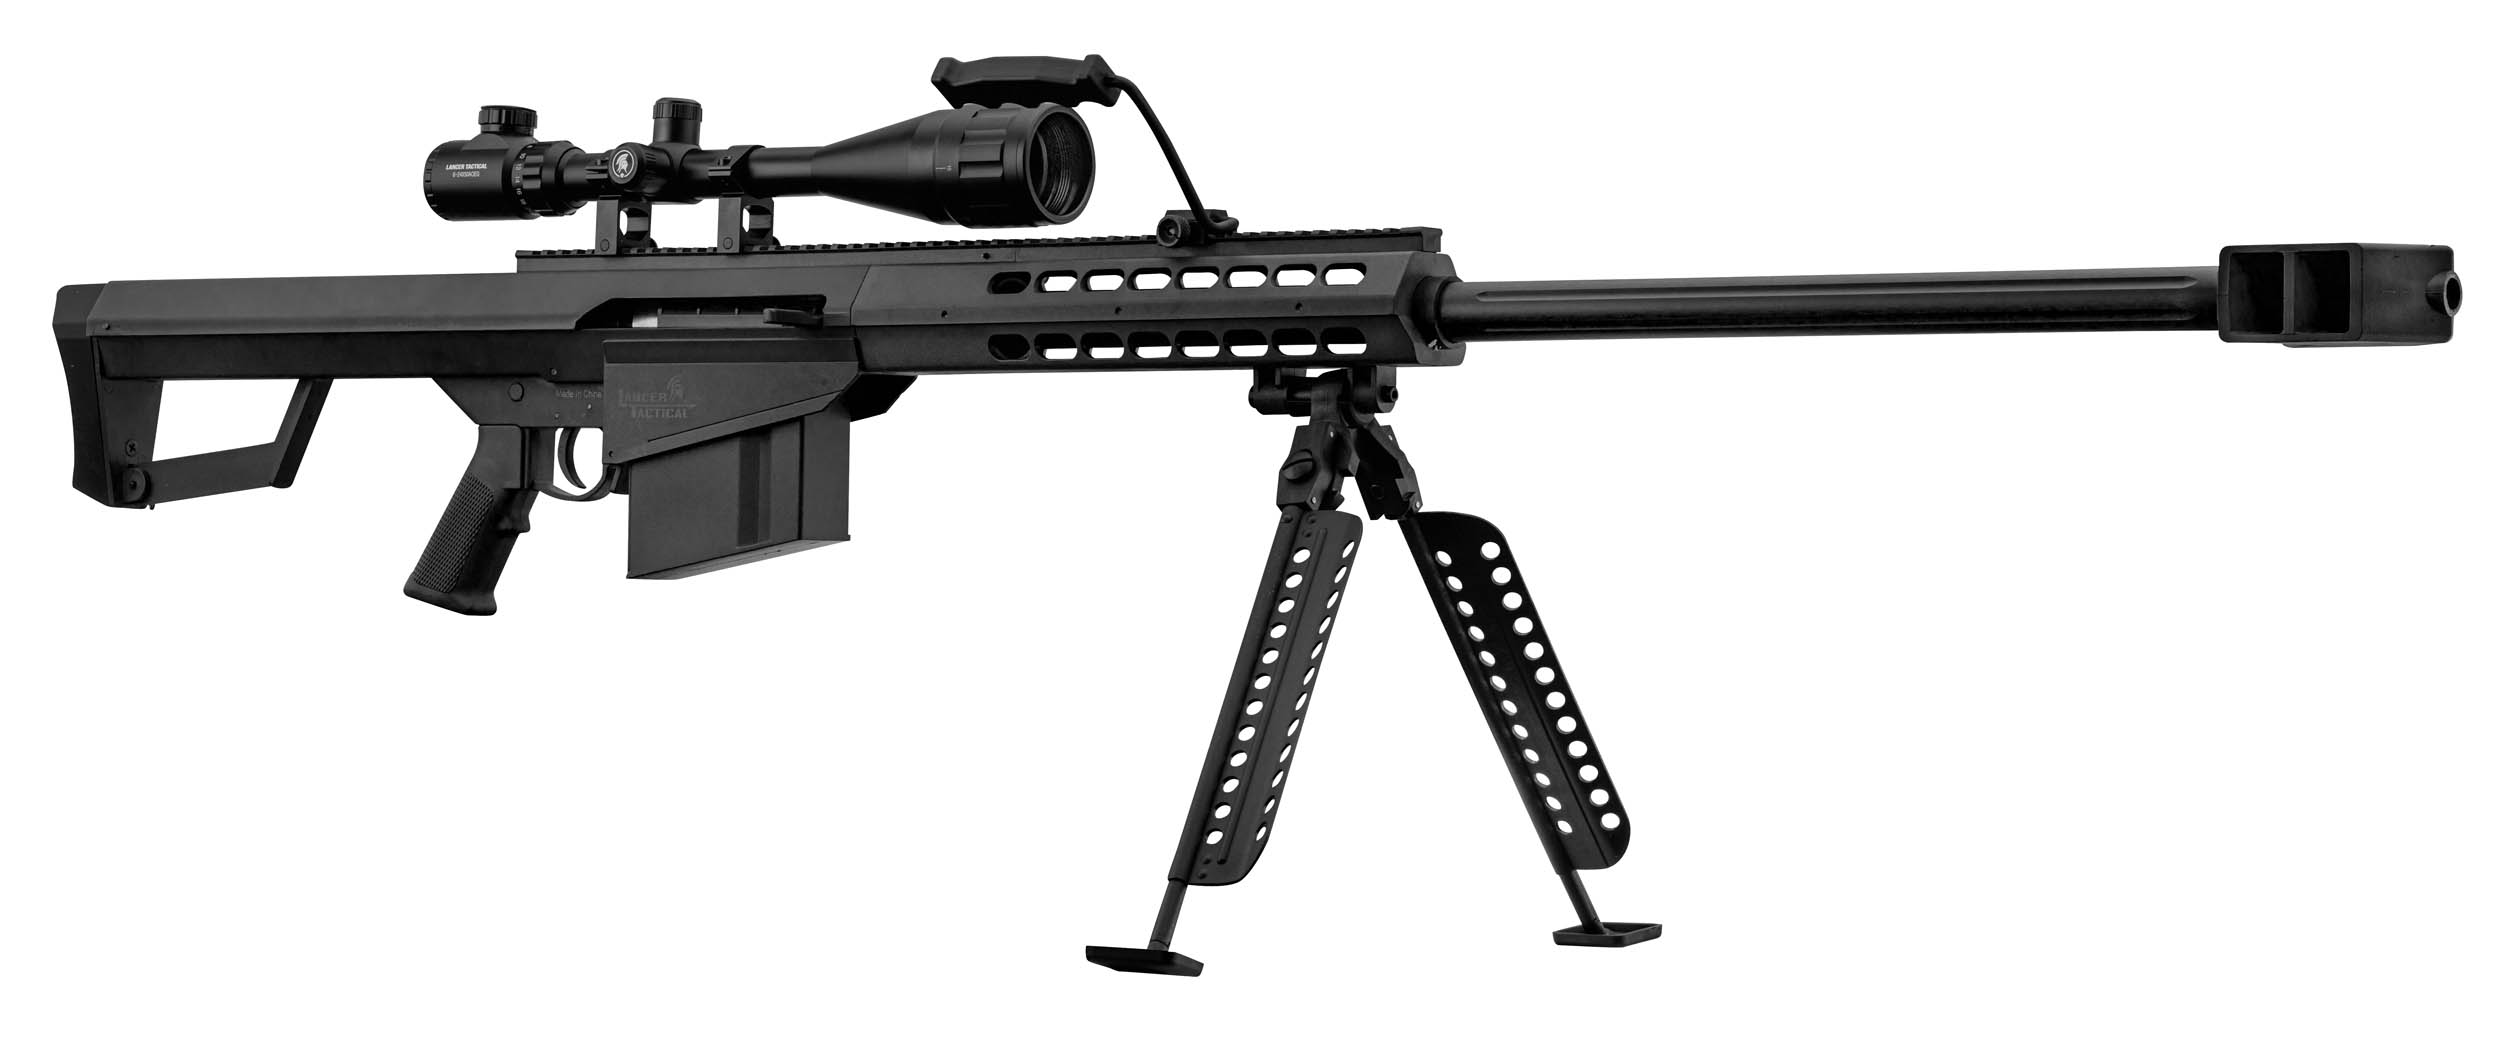 PCKLR3050-03 Pack Sniper LT-20 noir M82 1,5J + lunette + bi-pied + poignée